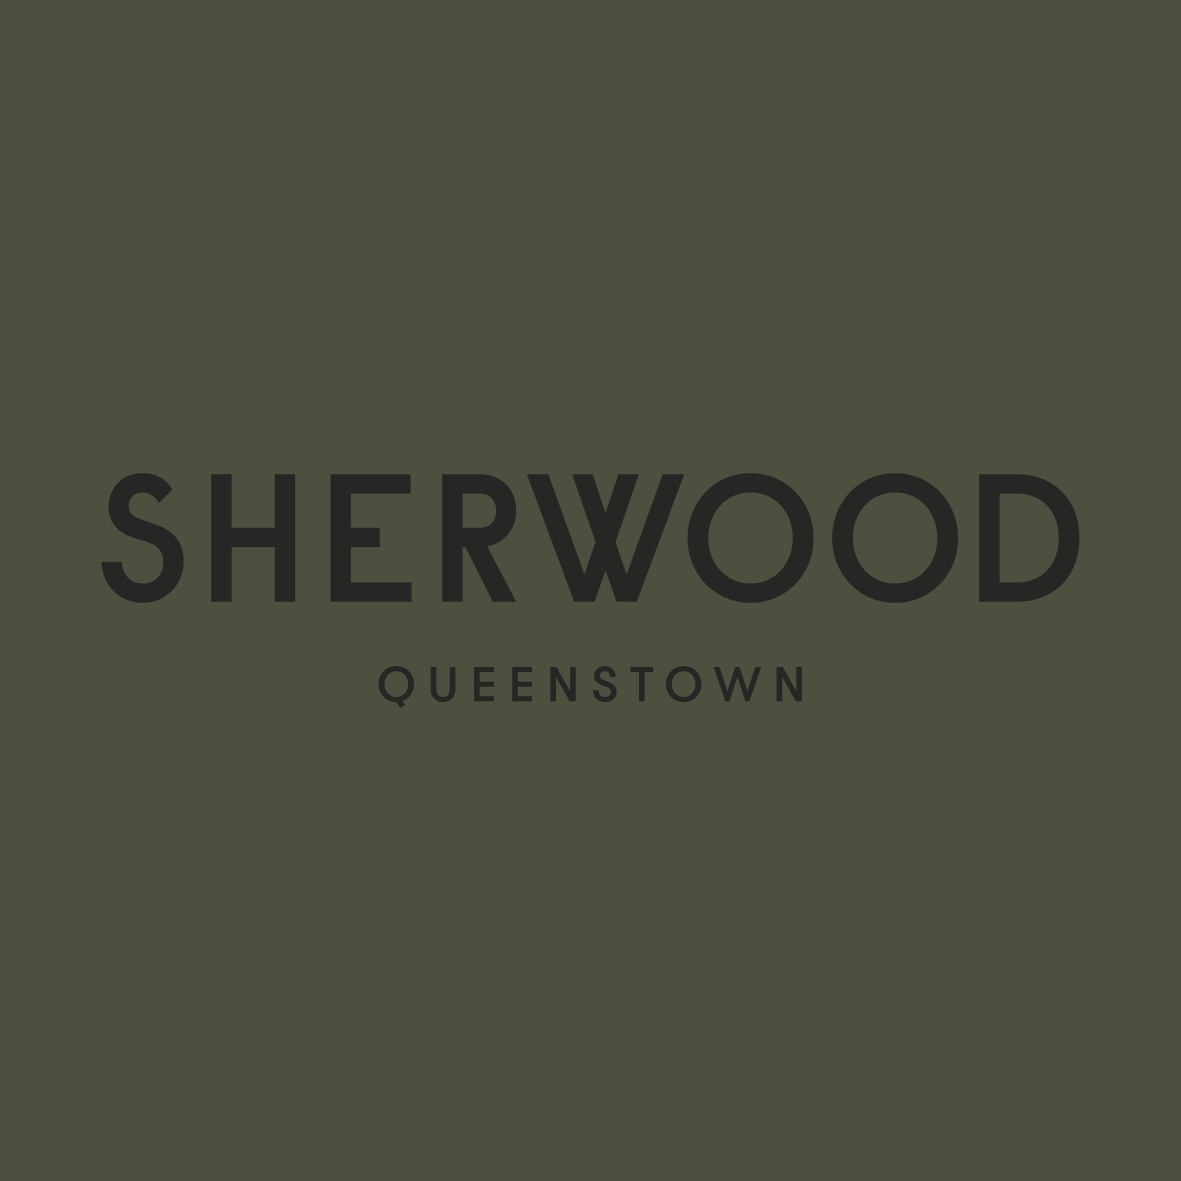 
Sherwood Queenstown